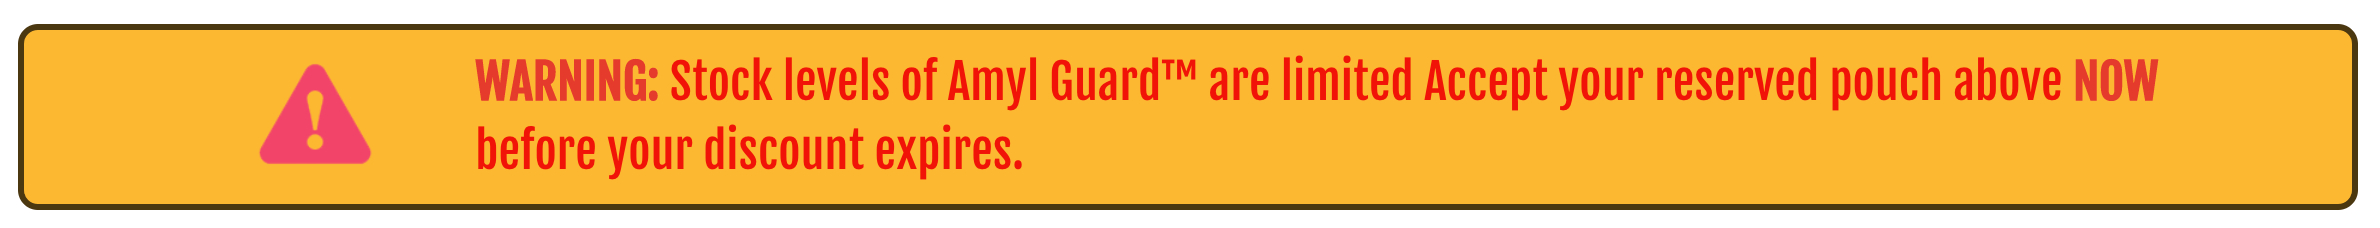 Amyl Guard - WARNING